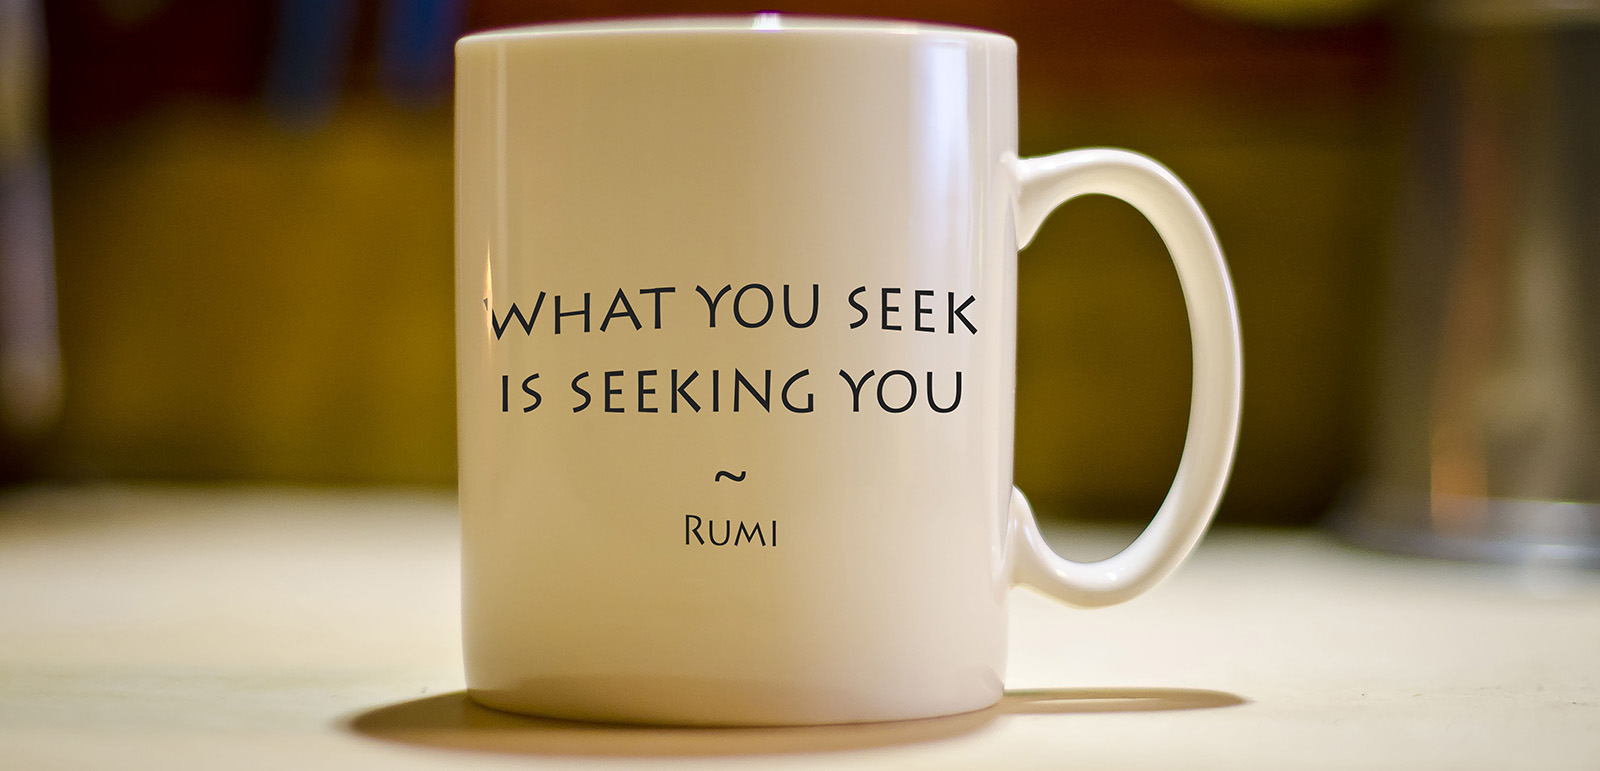 Rumi Persian poet online  merchandise  Etsy